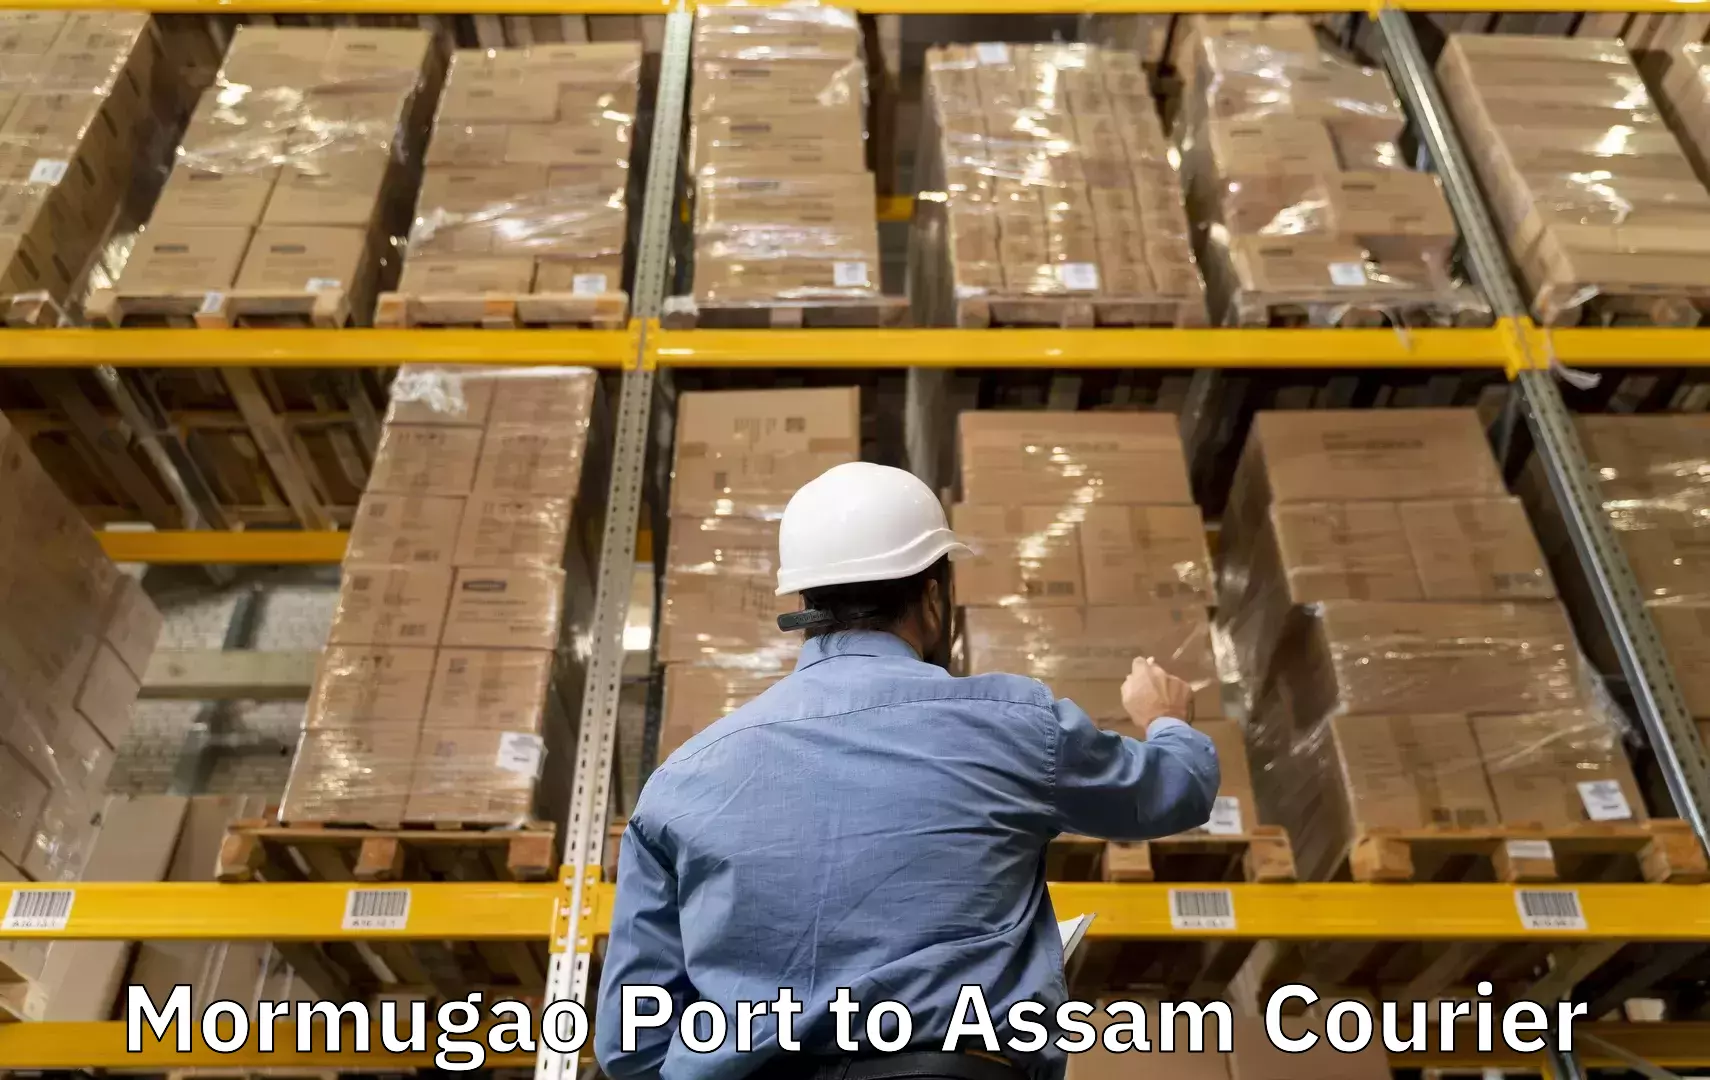 Luggage shipment specialists Mormugao Port to Kamrup